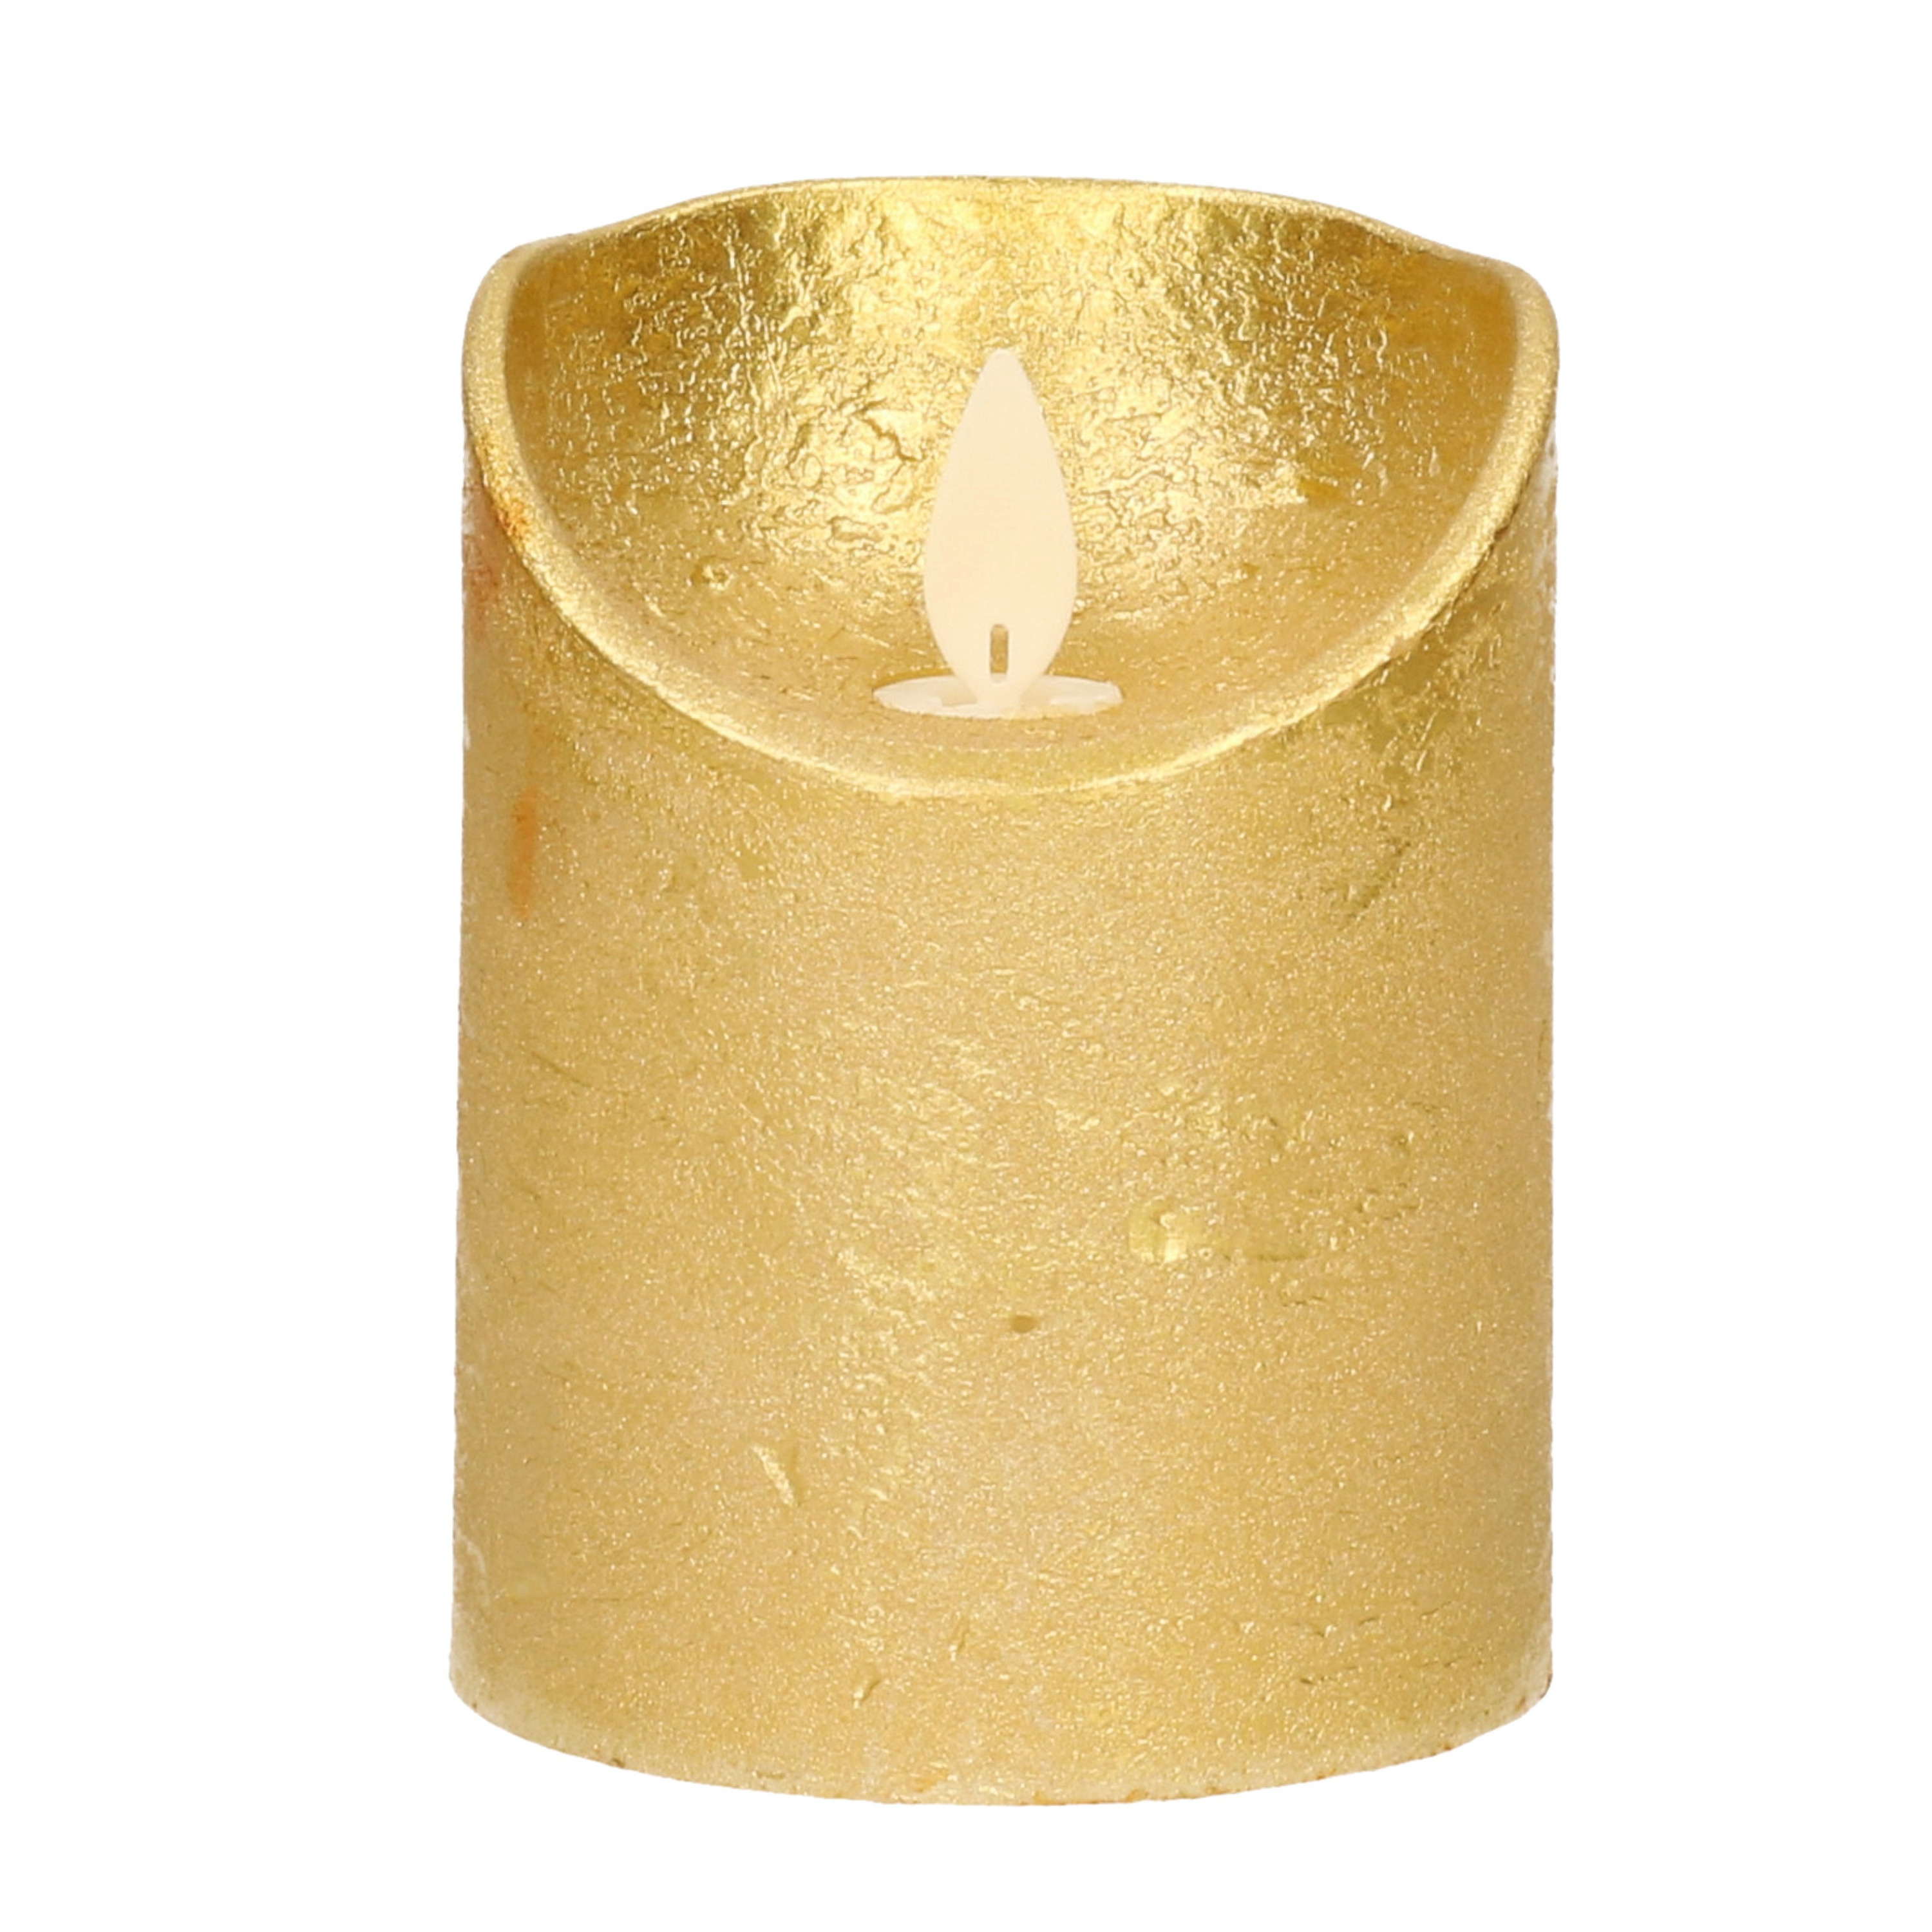 1x Gouden LED kaarsen / stompkaarsen met bewegende vlam 10 cm